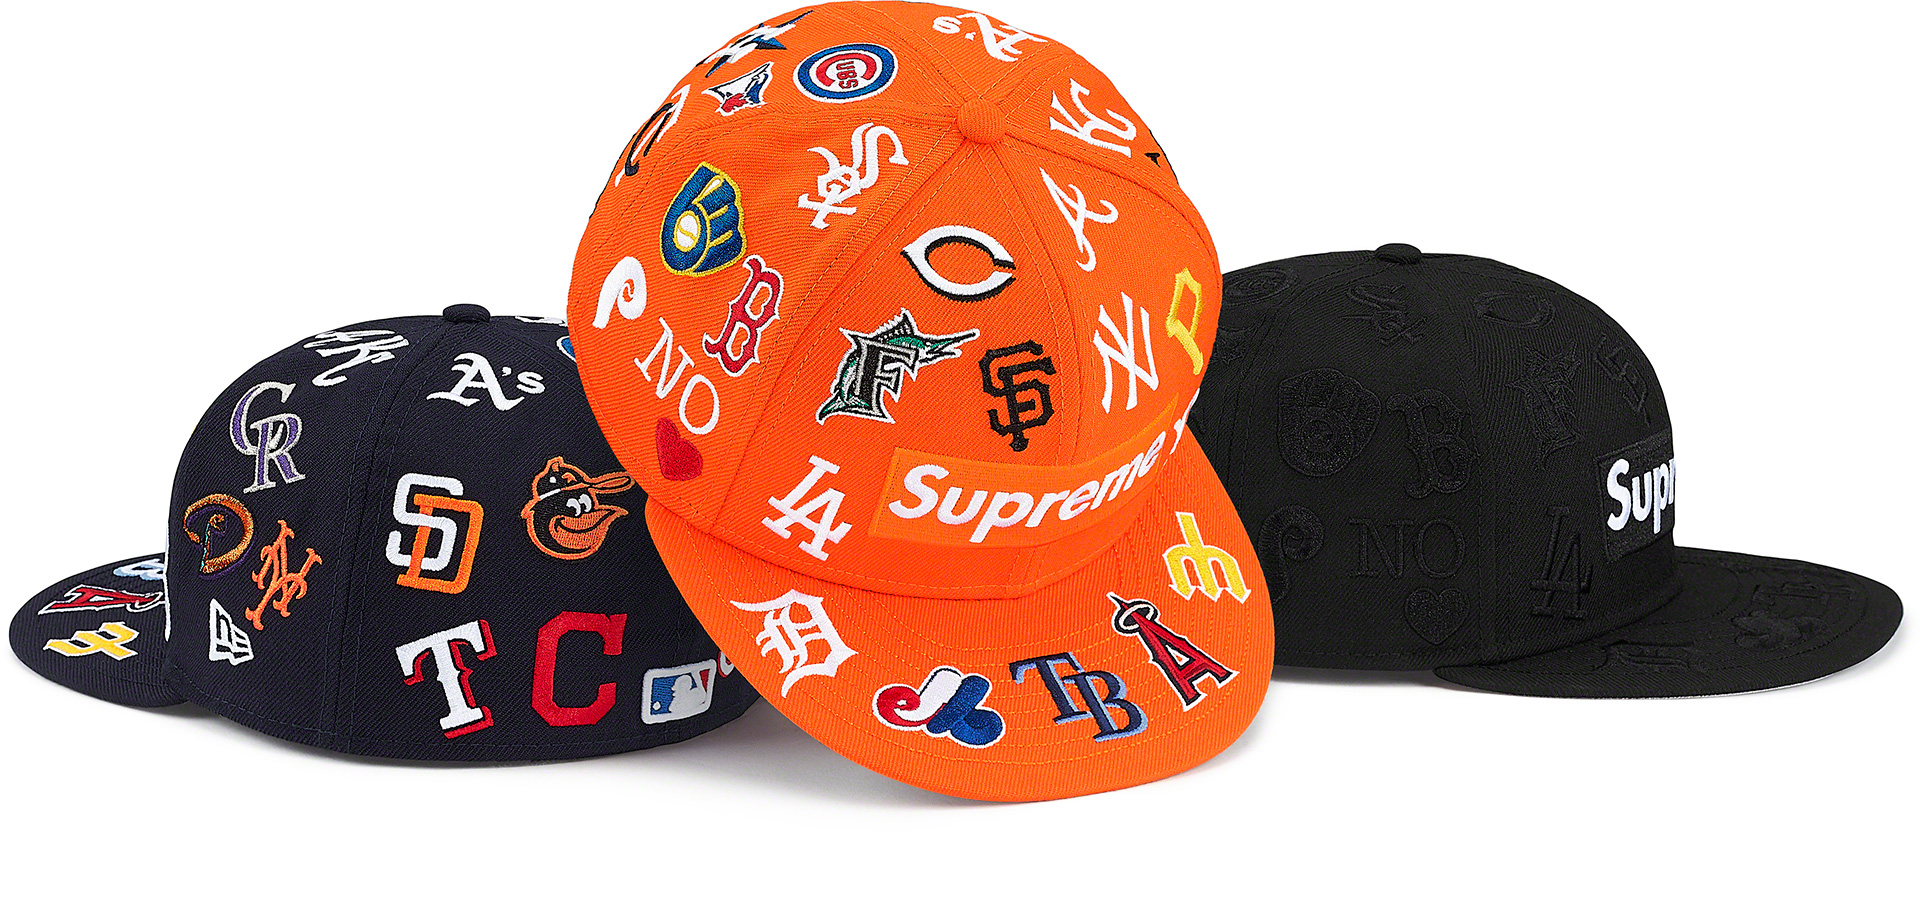 Supreme, Accessories, Supreme Baseball Cap